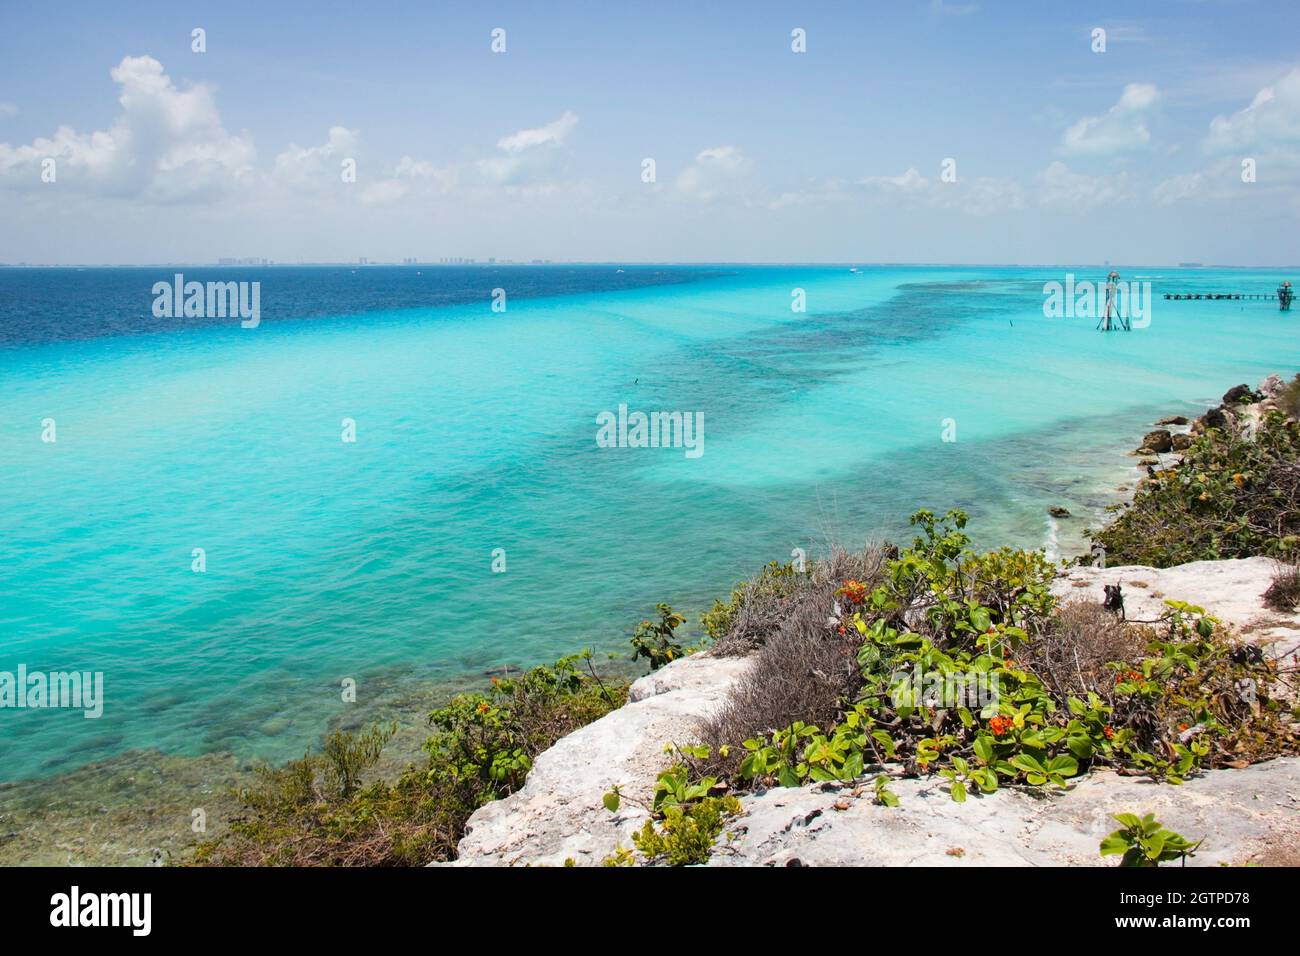 Herrliche Aussicht auf das türkisfarbene und blaue Karibische Meer von der Insel Isla Mujeres, Mexiko. Exotisches Paradies, Reise Urlaubsziel Konzept Stockfoto